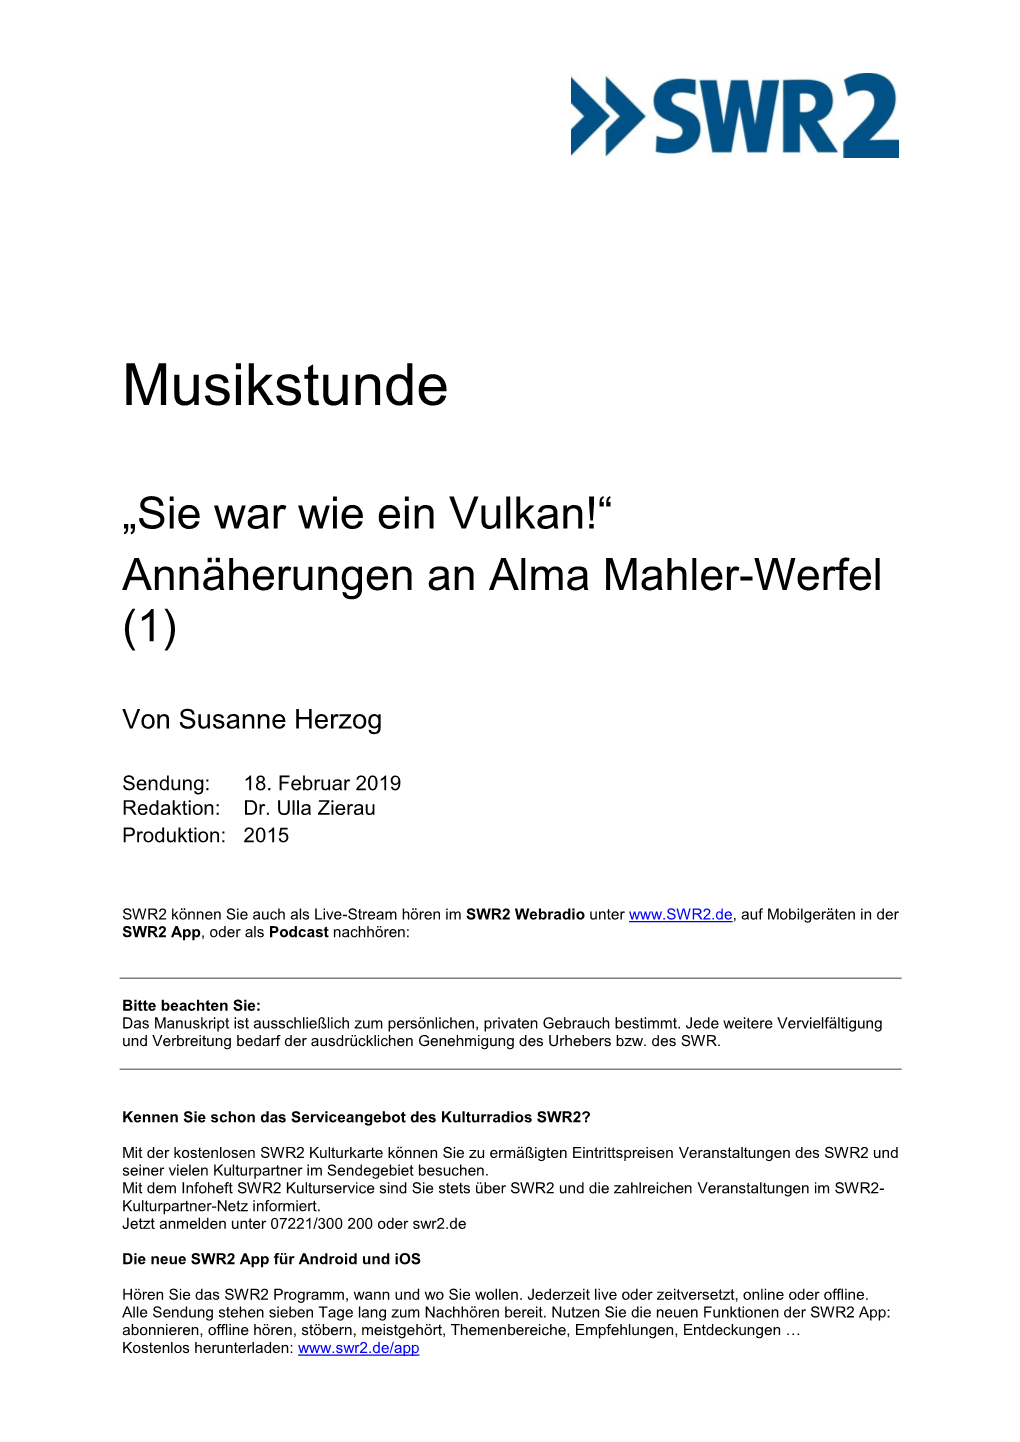 Annäherungen an Alma Mahler-Werfel (1)